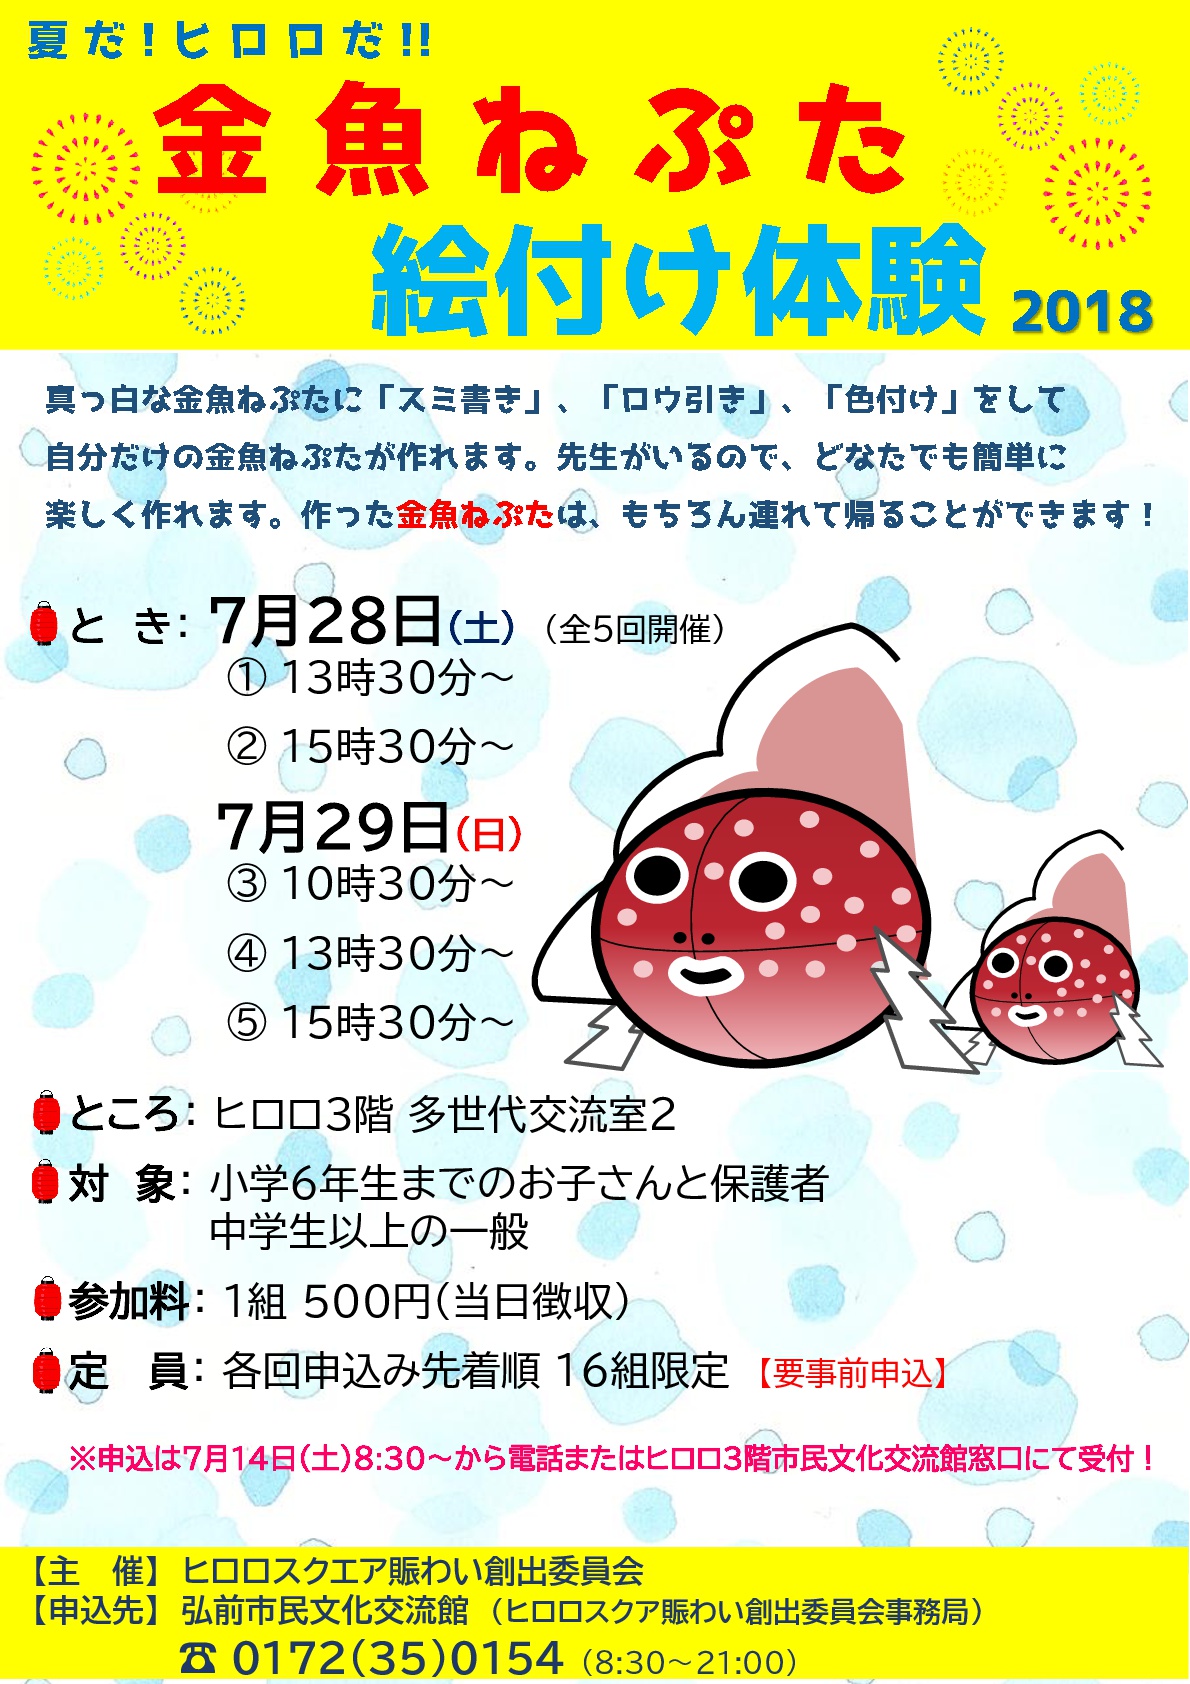 金魚ねぷた絵付け体験2018ちらしカラー-001.jpg